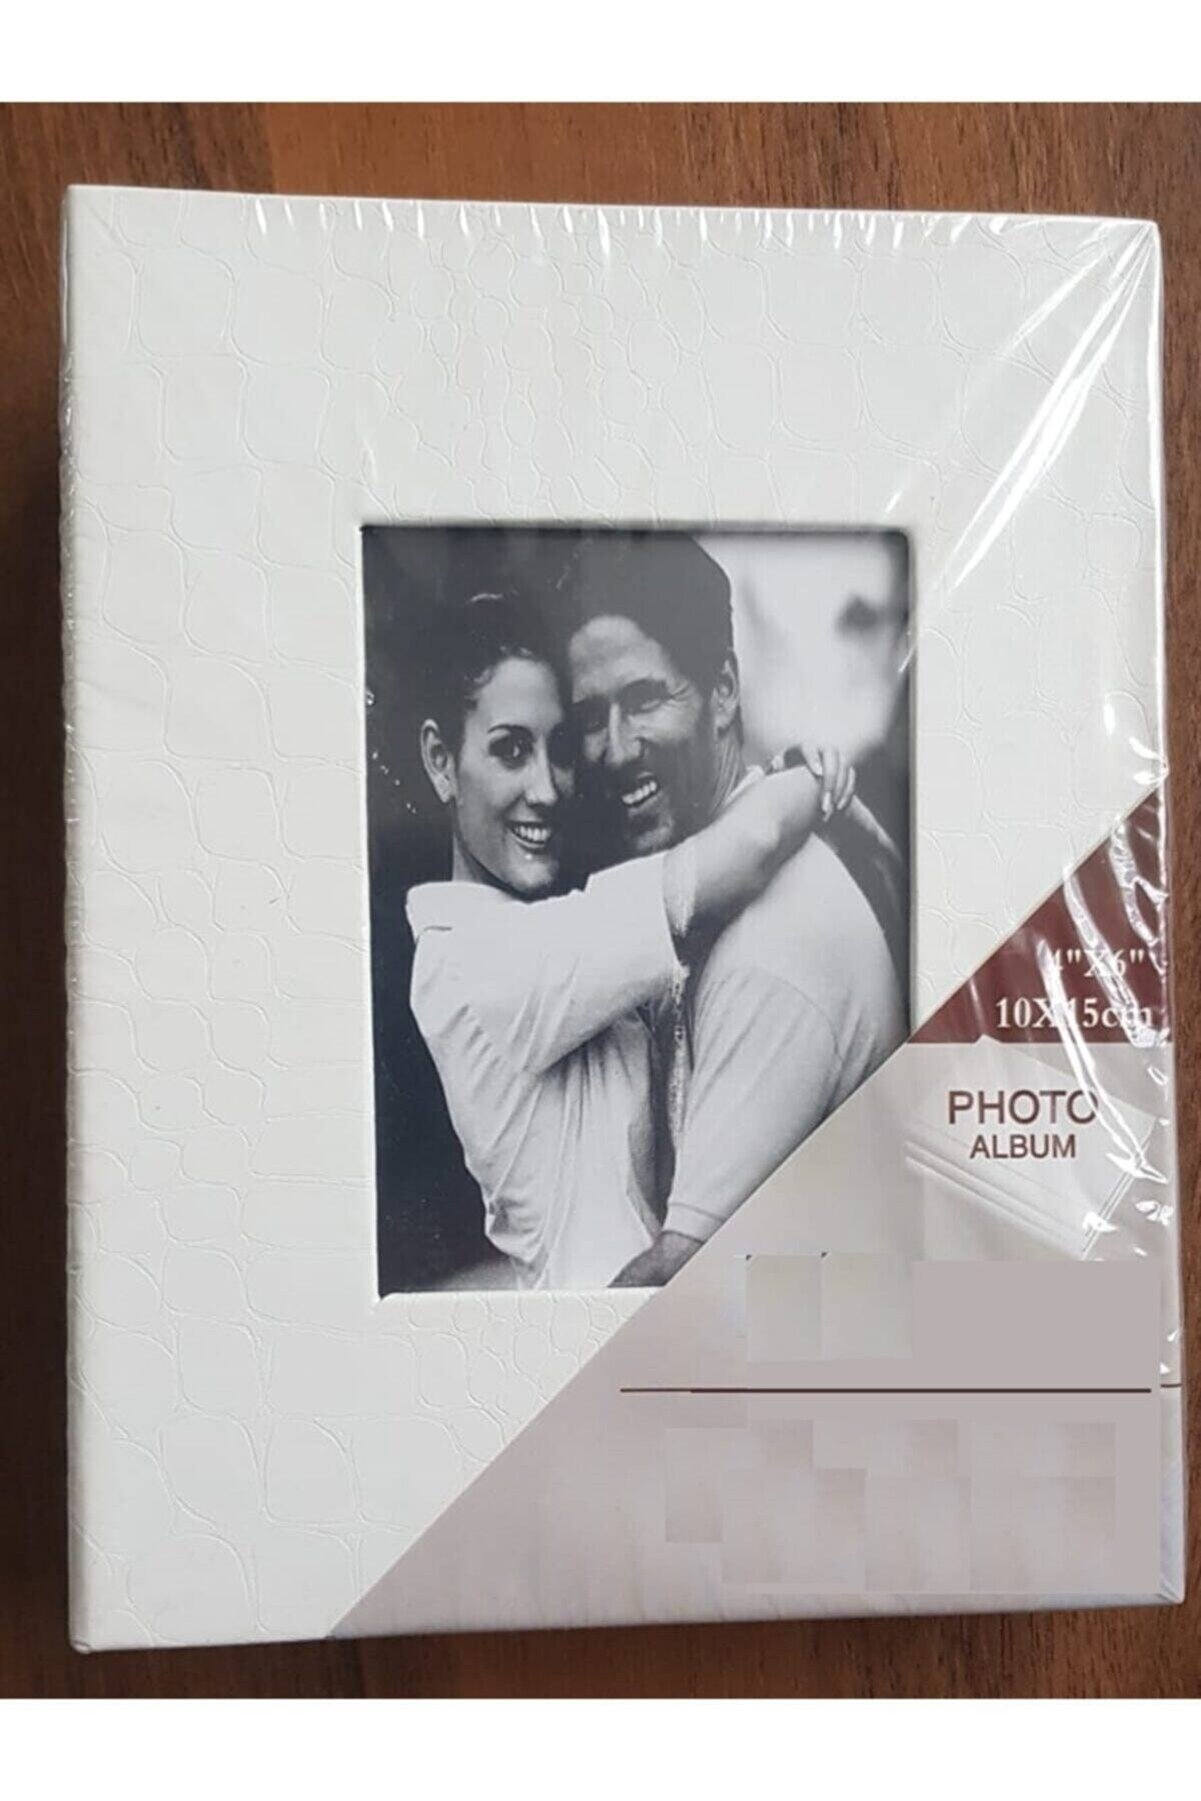 Vural Foto Baskı 200lü 10x15cm Fotoğraf Albümü Beyaz - Deri Kaplı Foto Pencereli - Aile Resimleri Için Album